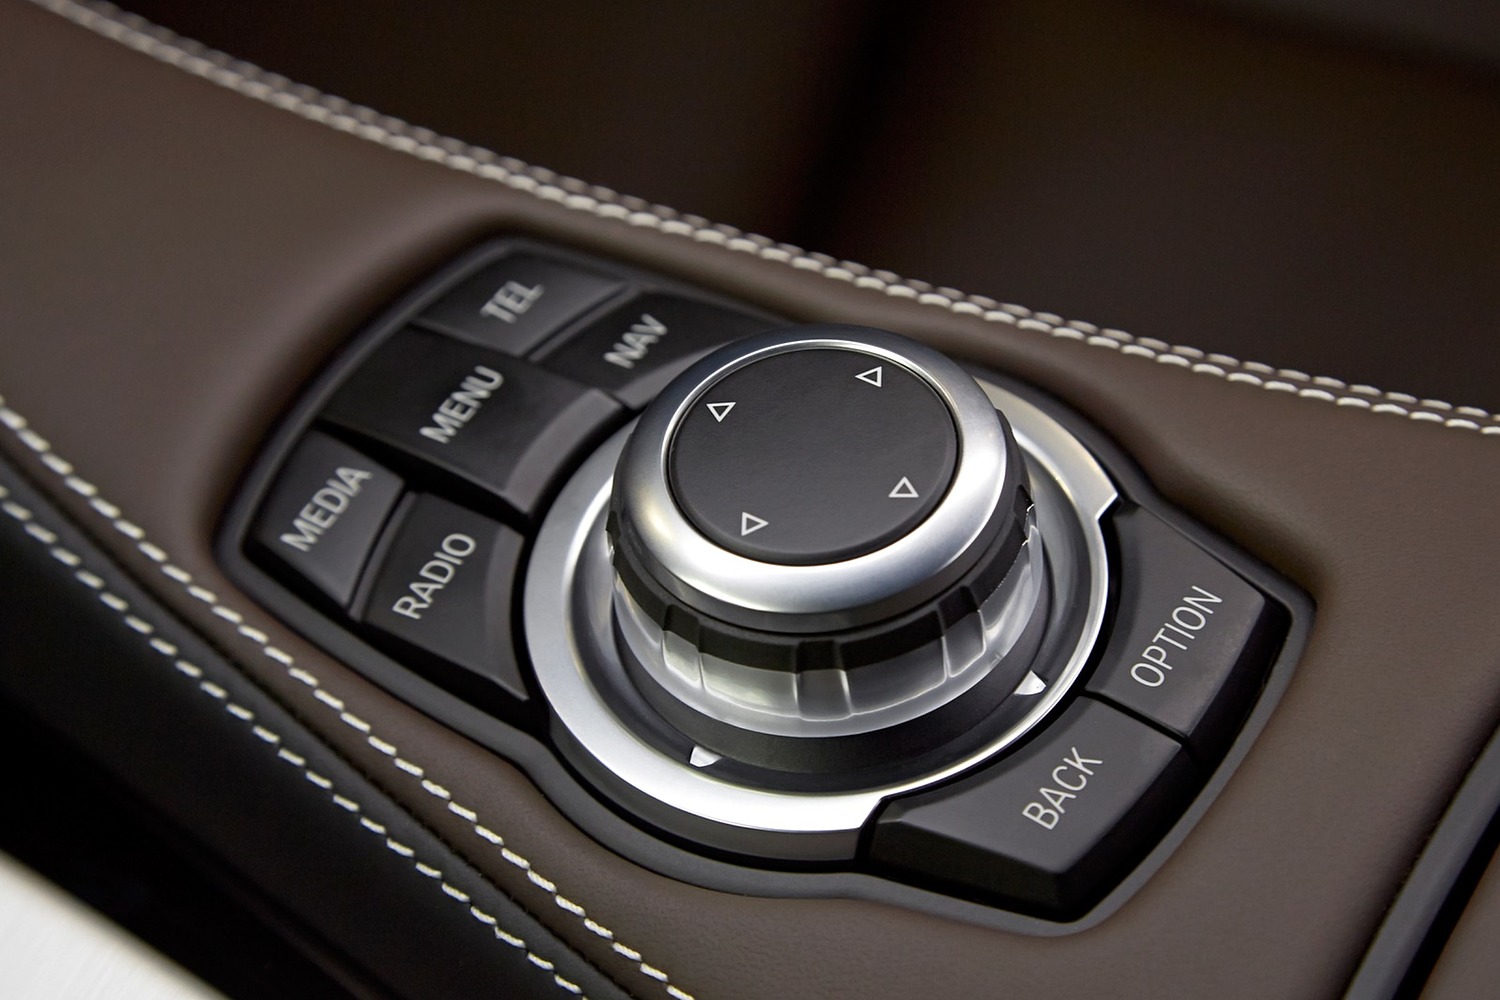 BMW M6 Gran Coupe Sedan Aux Controls (2017 model year shown)